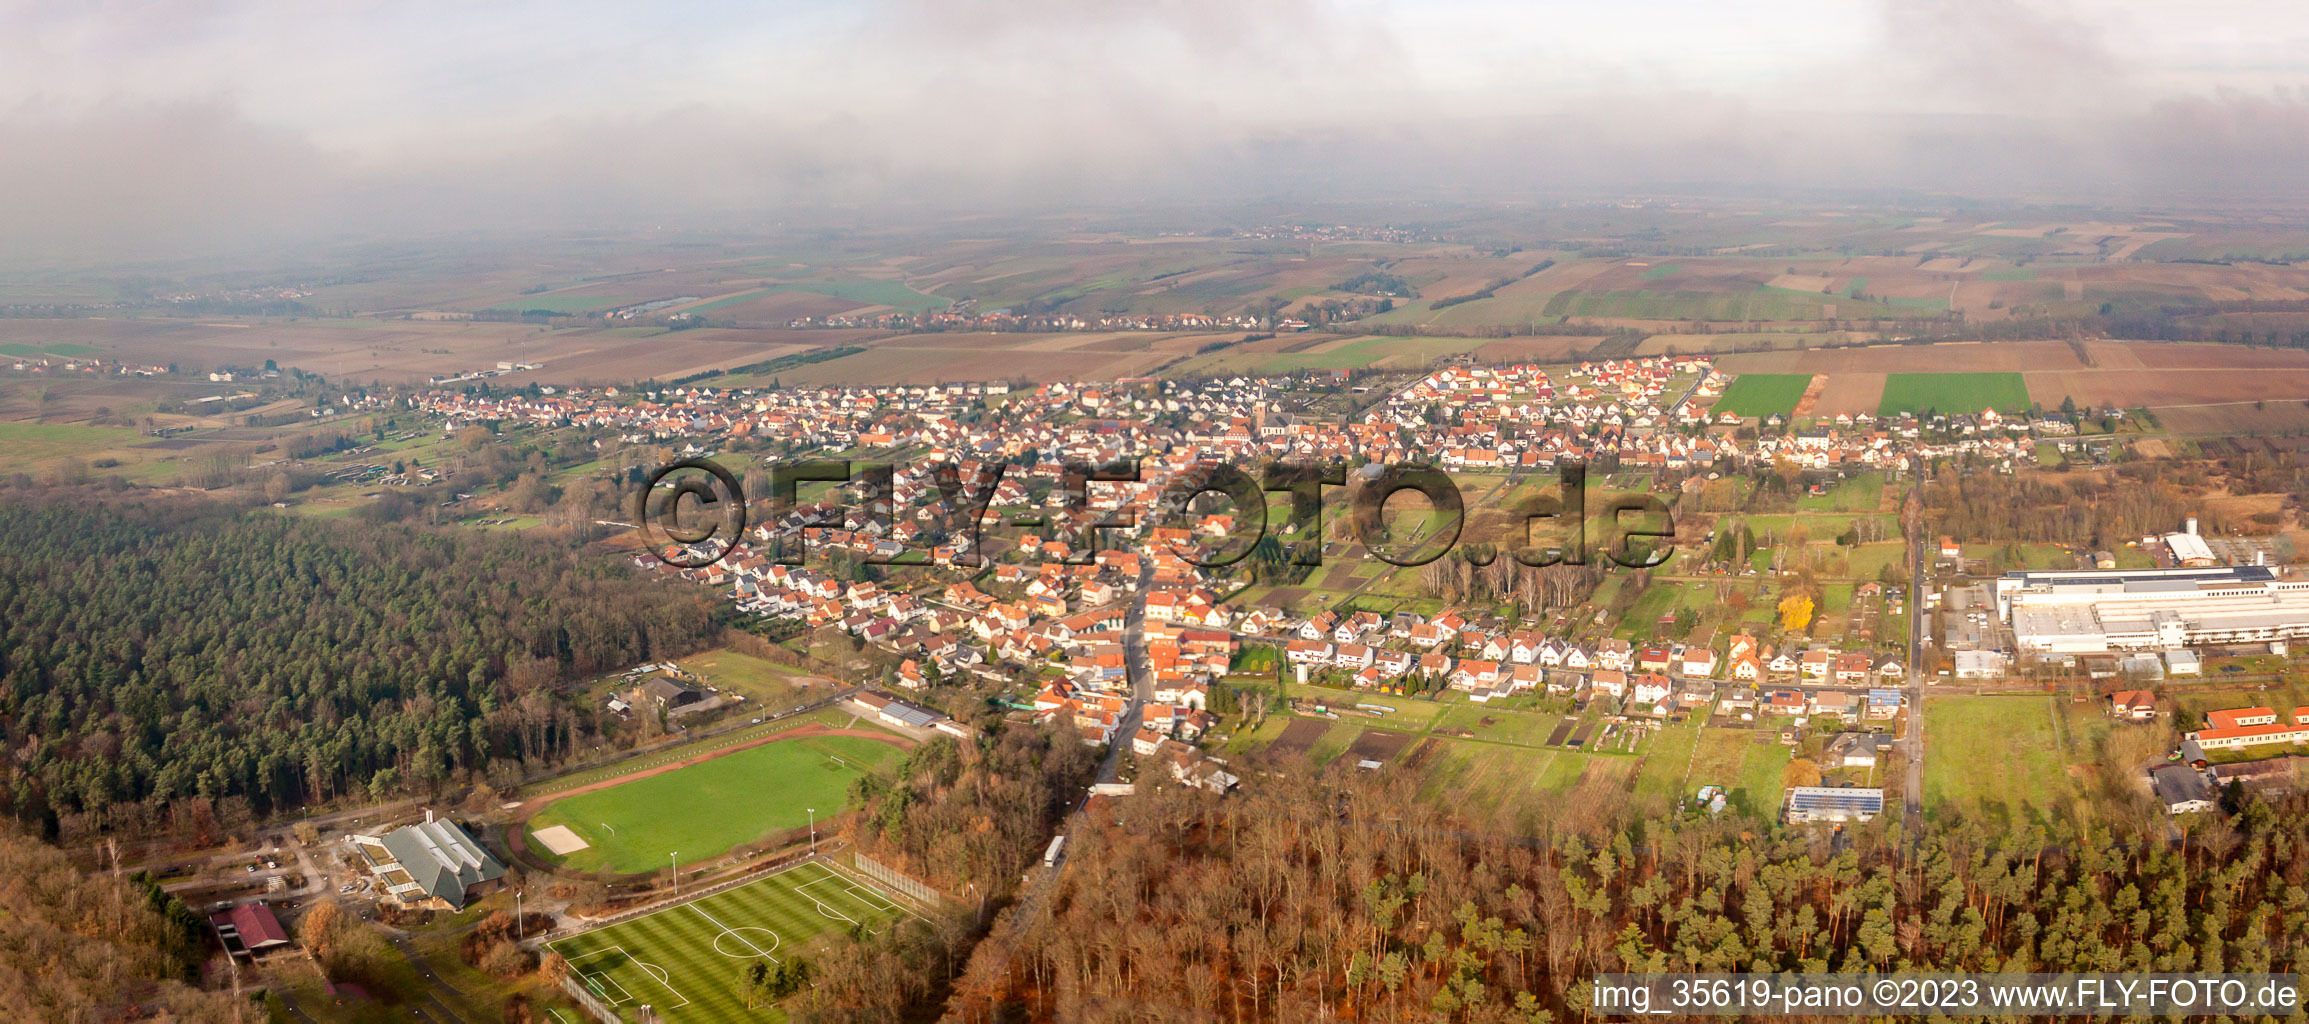 Oblique view of District Schaidt in Wörth am Rhein in the state Rhineland-Palatinate, Germany